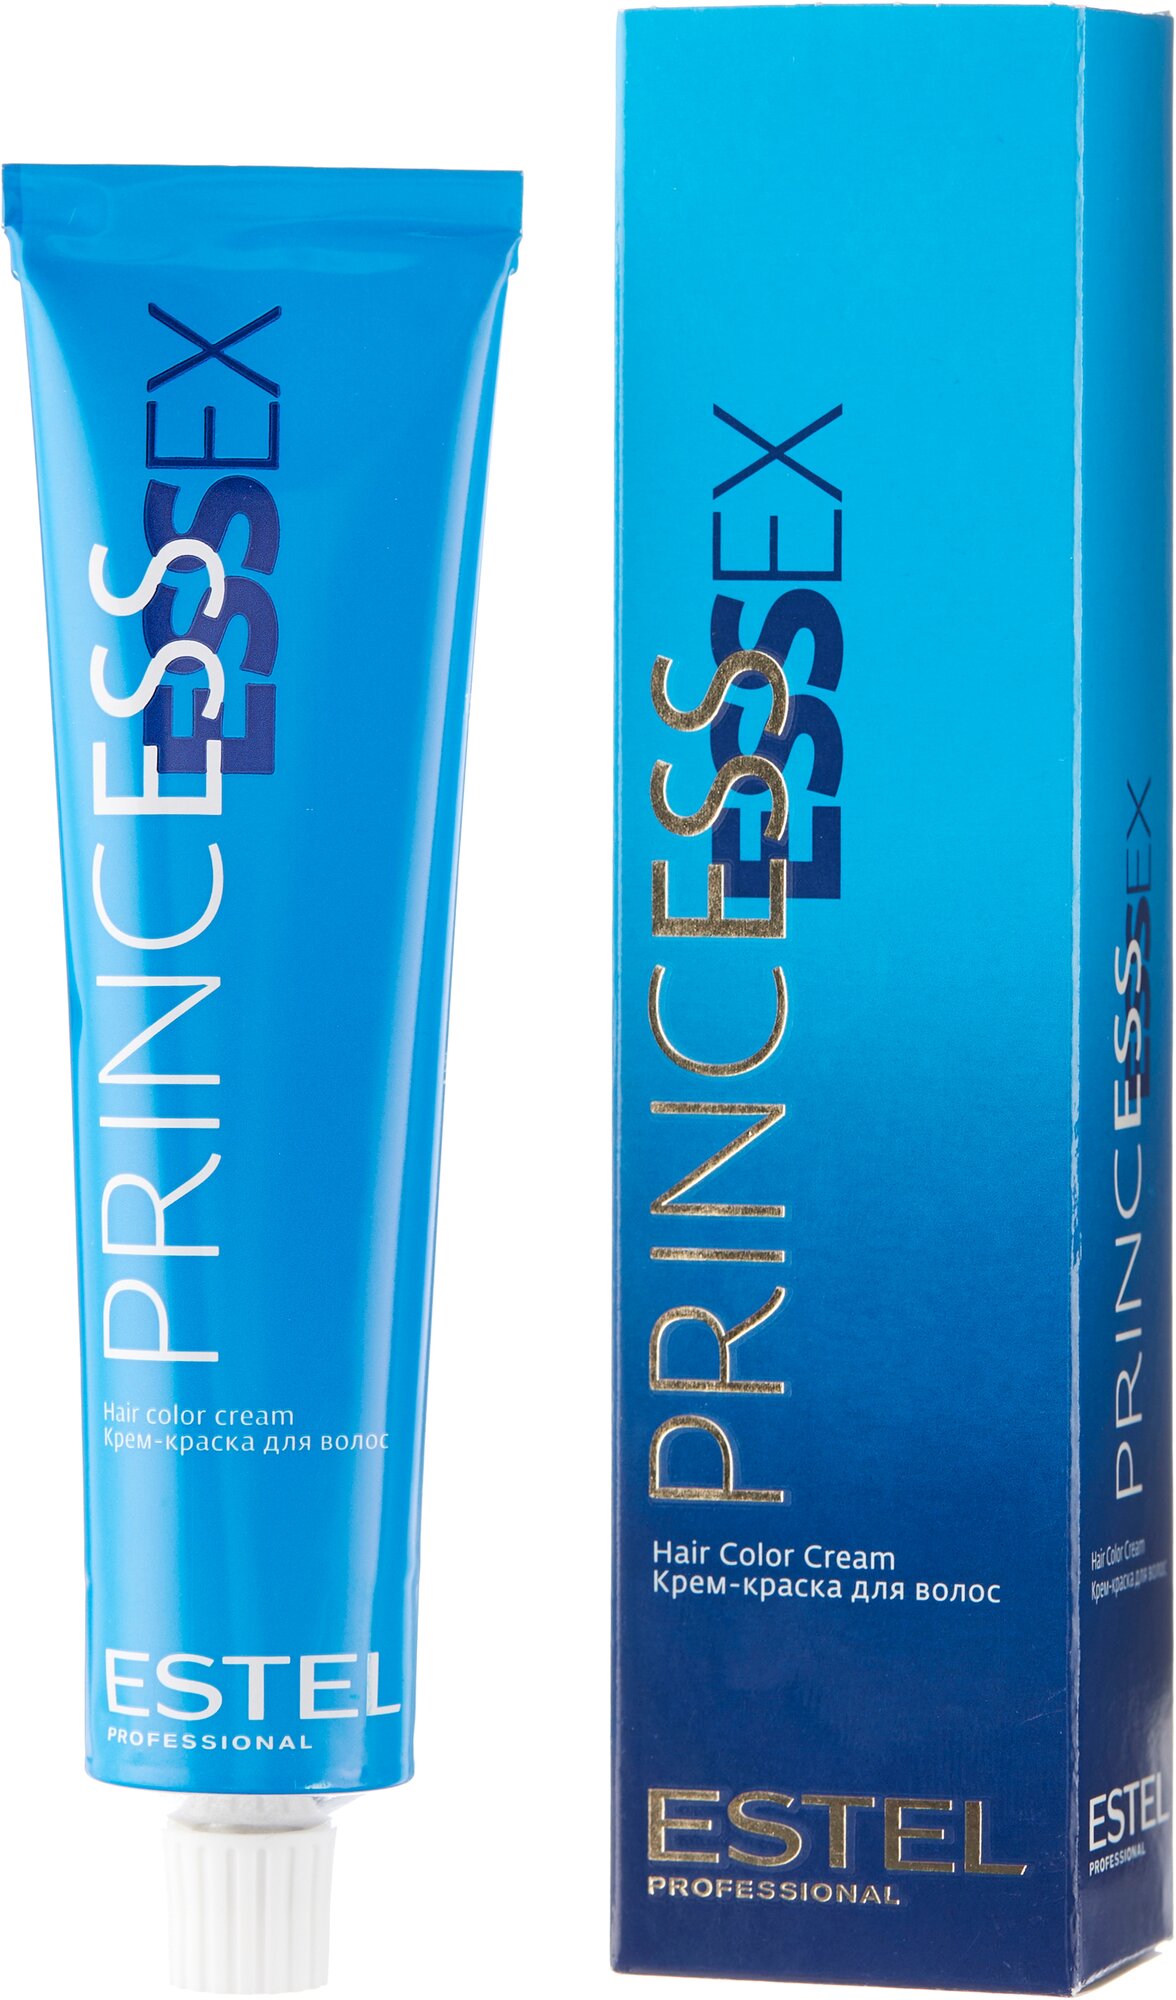 ESTEL Princess Essex крем-краска для волос